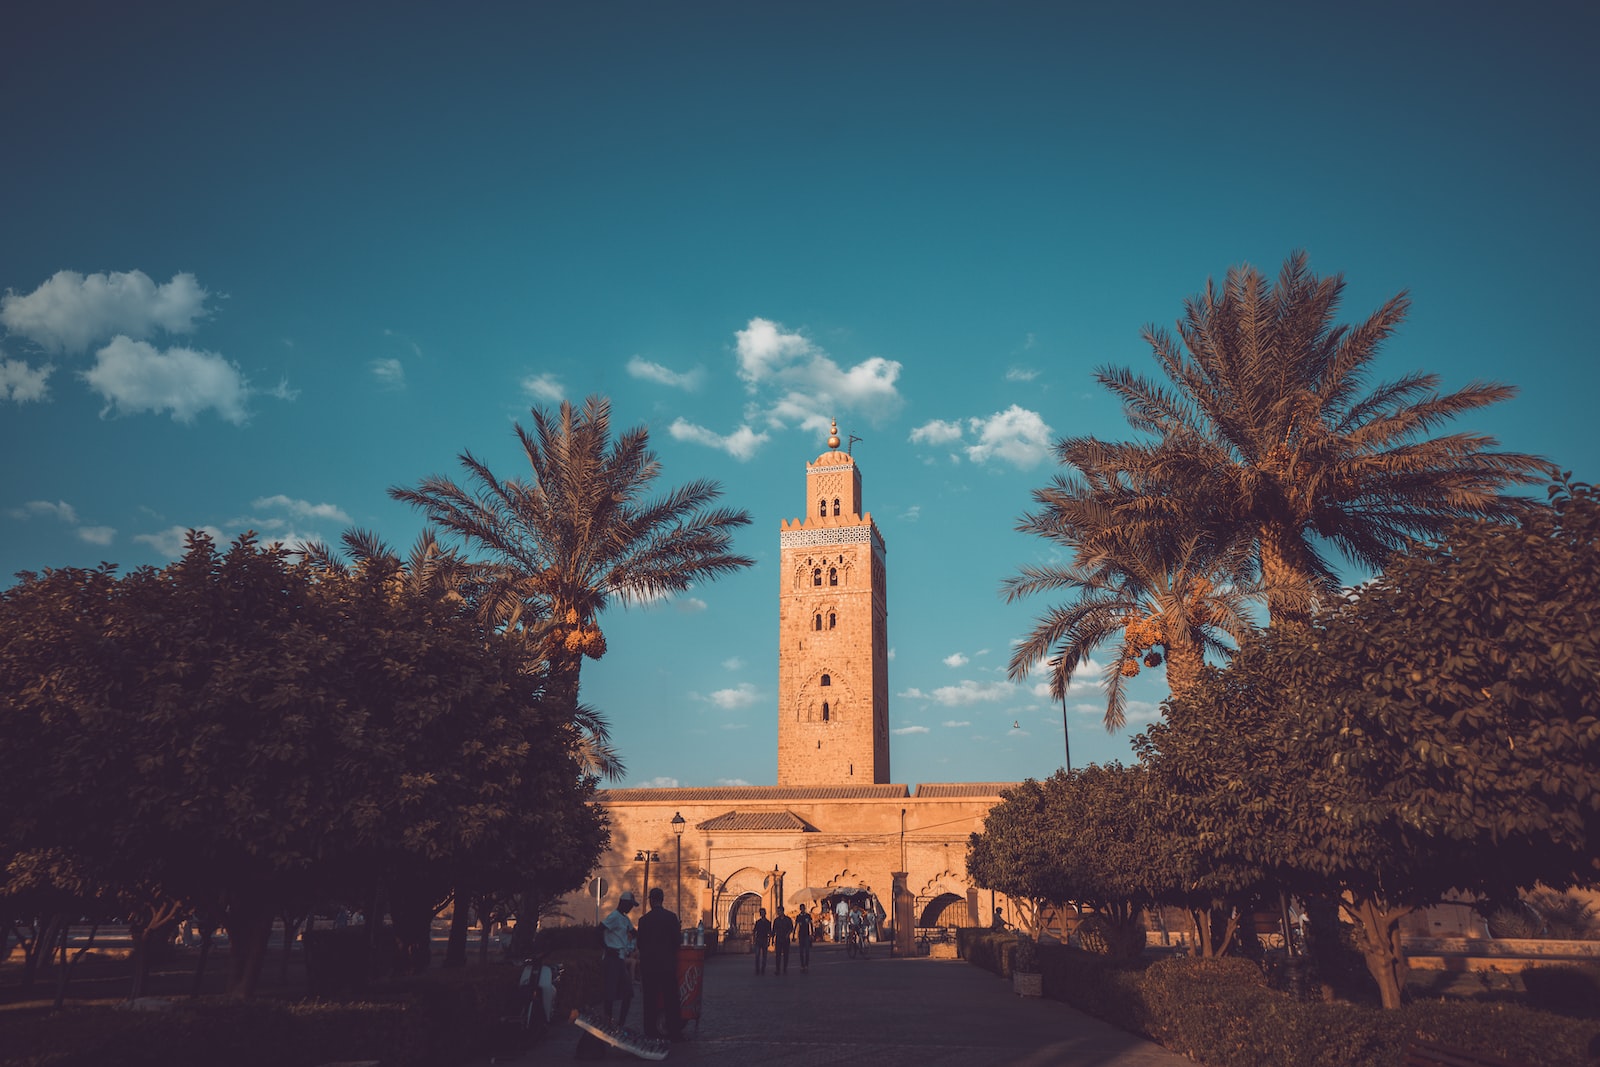 Marrakech , archétype de la cité marocaine